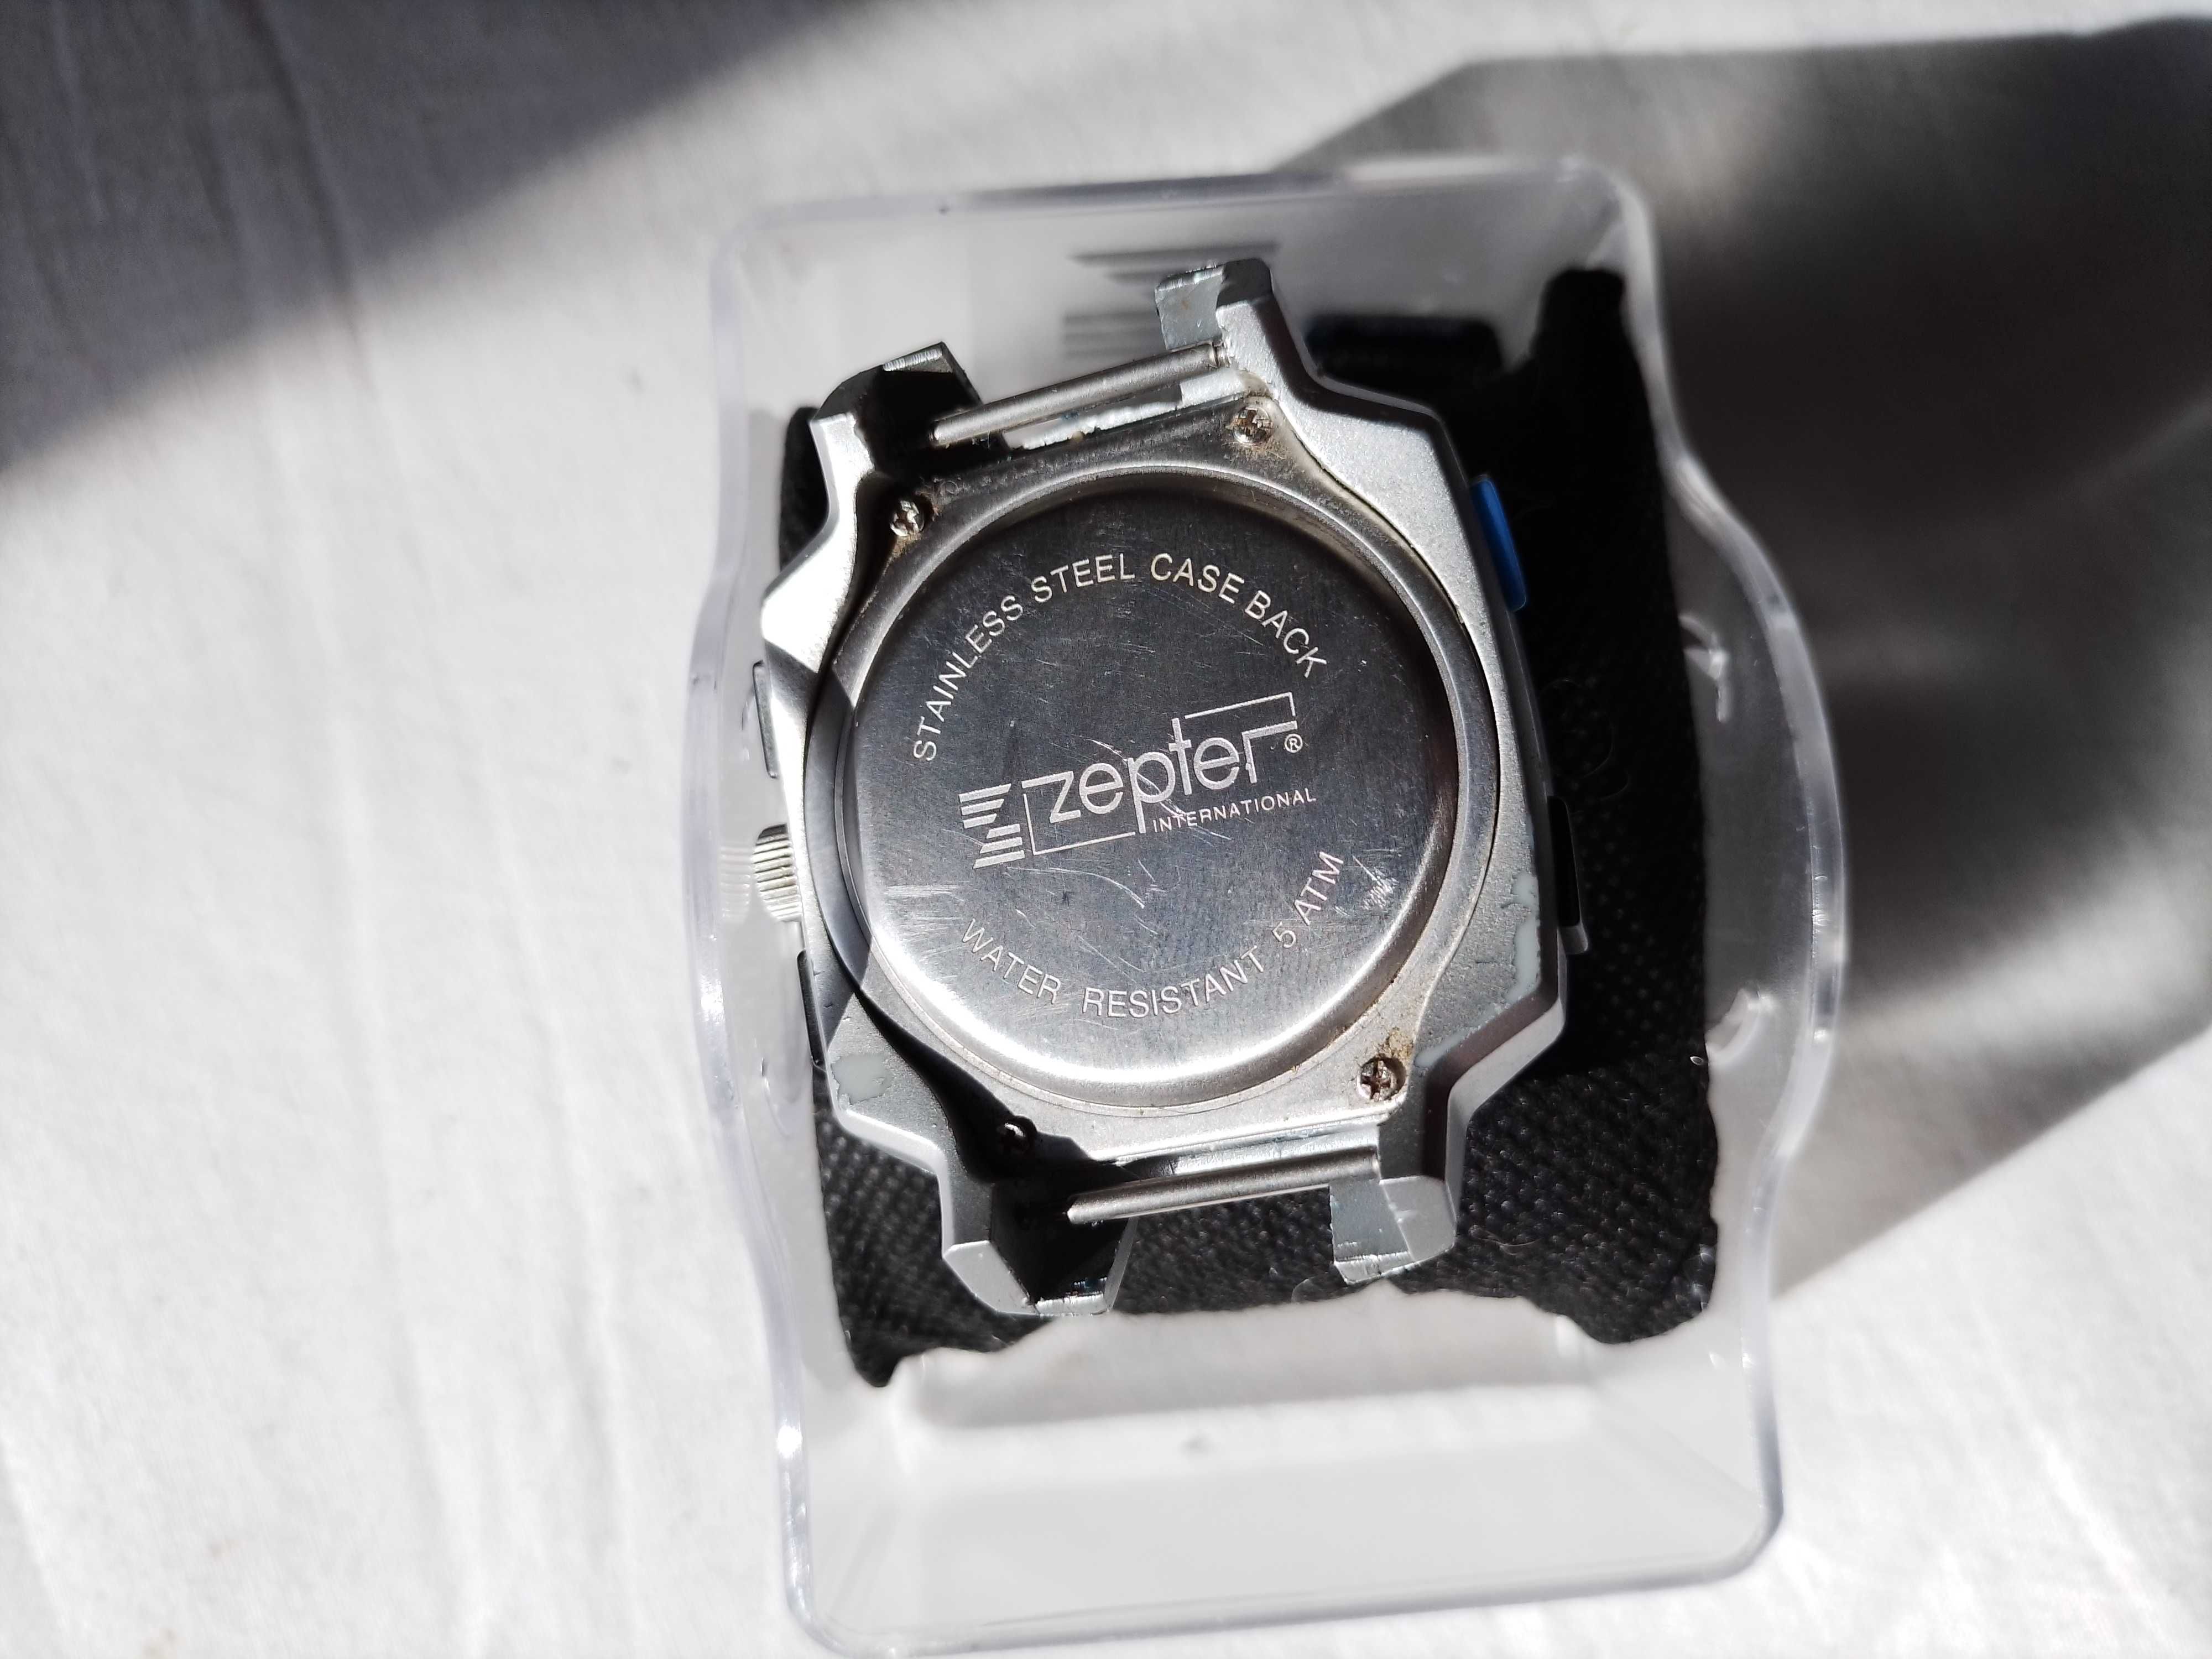 Швейцарские наручные часы фирмы "Zepter"